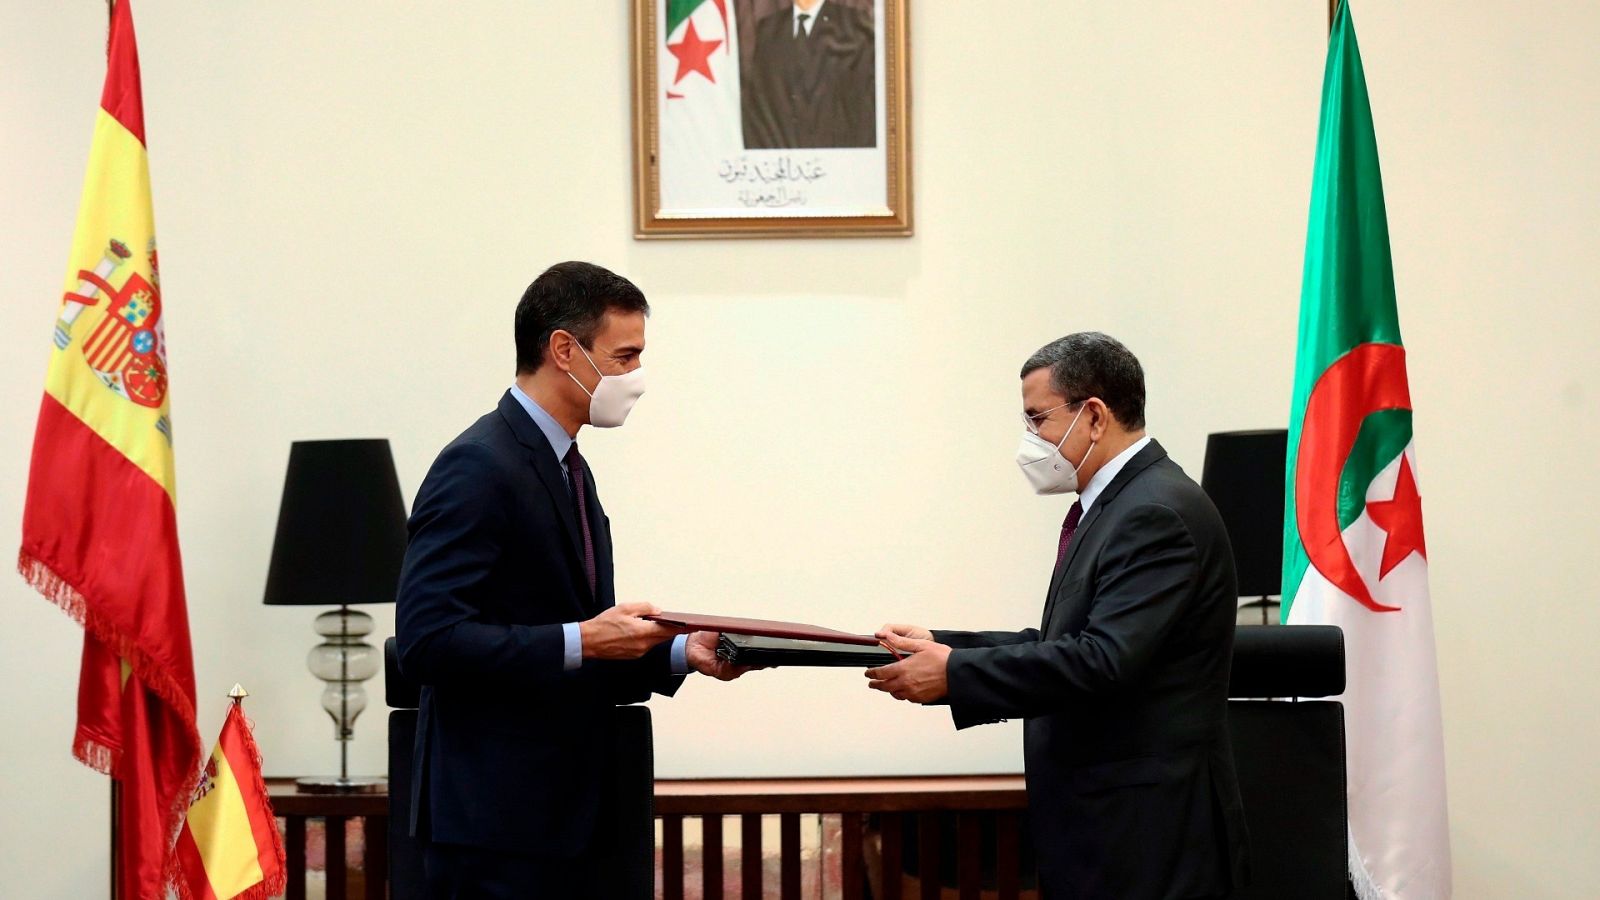 El presidente del Gobierno español, Pedro Sánchez, en su visita a Argelia en 2020. Foto: Efe